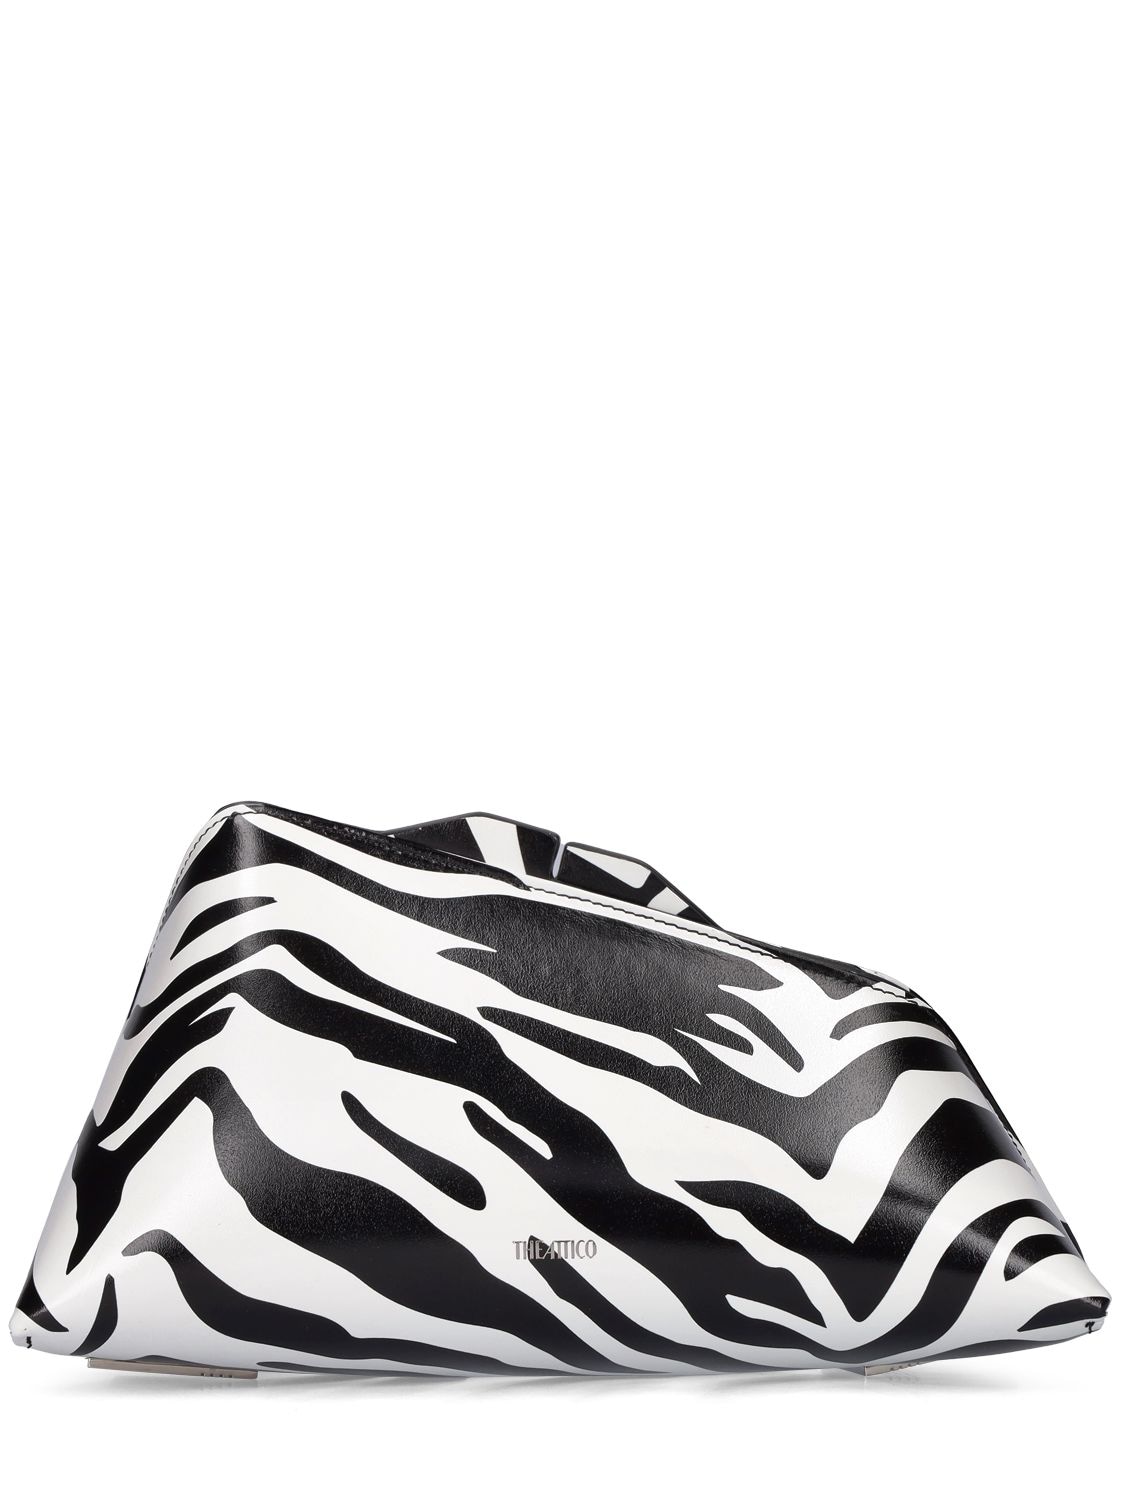 Attico 8.30 Pm Zebra Printed Leather Clutch In White,black